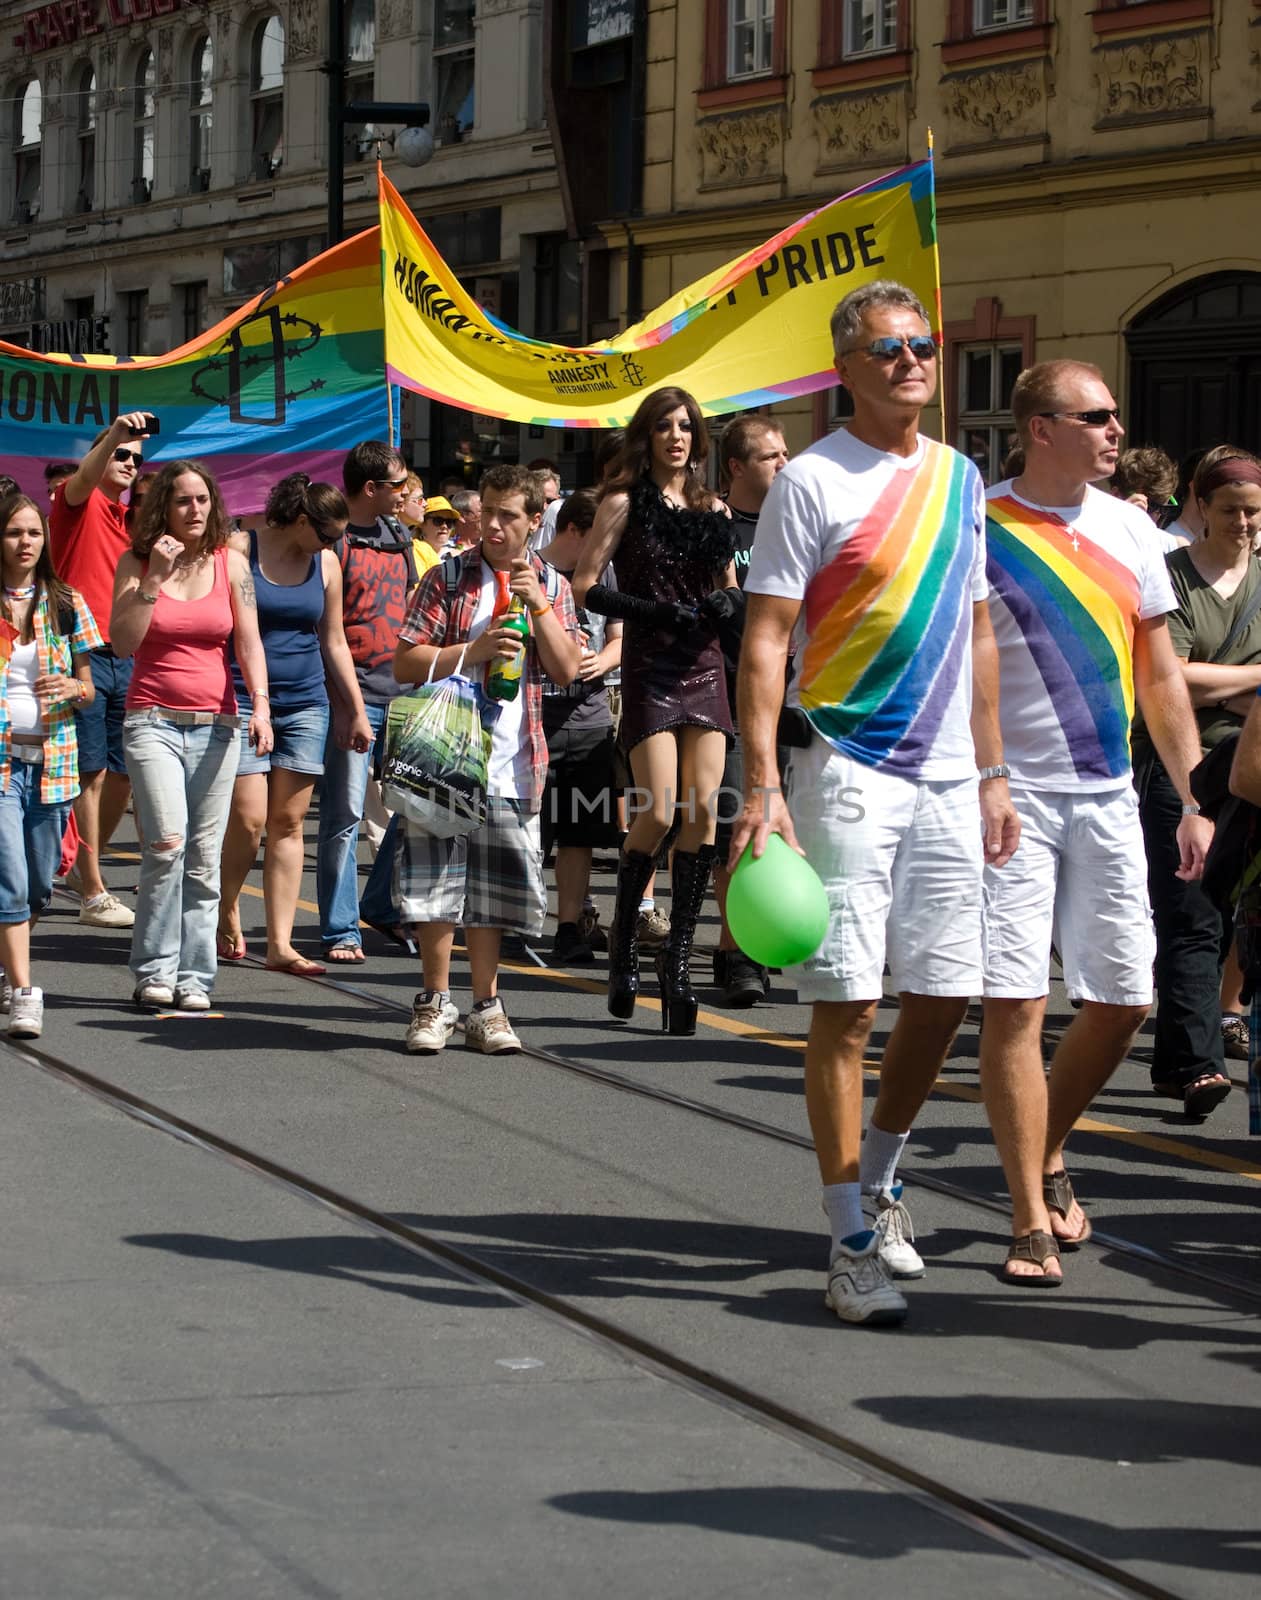 Prague pride parade by sarkao